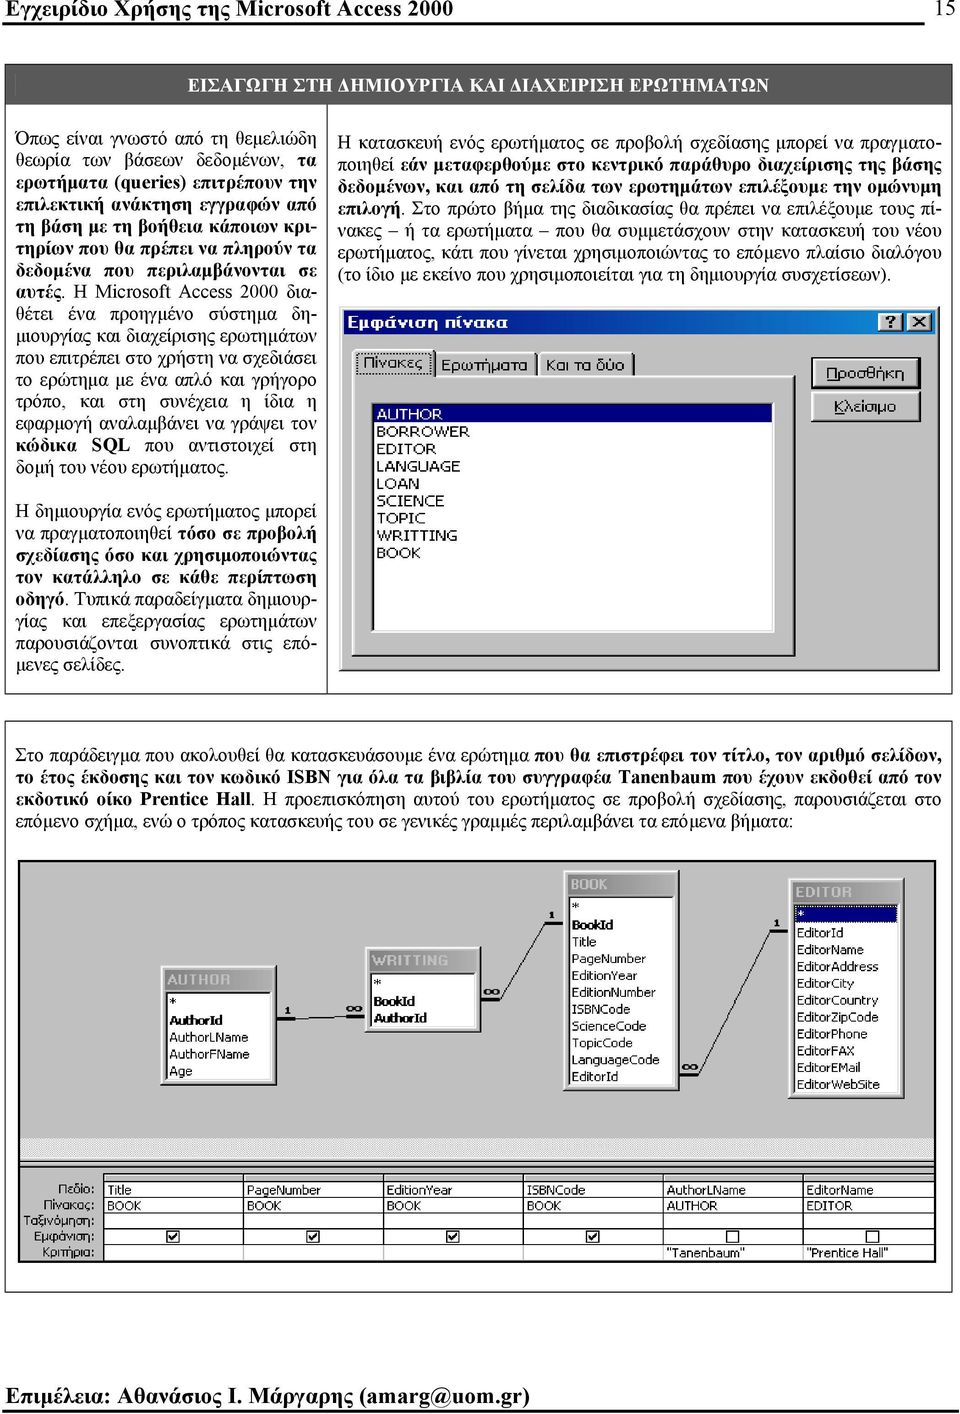 Η Microsoft Access 2000 διαθέτει ένα προηγµένο σύστηµα δη- µιουργίας και διαχείρισης ερωτηµάτων που επιτρέπει στο χρήστη να σχεδιάσει το ερώτηµα µε ένα απλό και γρήγορο τρόπο, και στη συνέχεια η ίδια